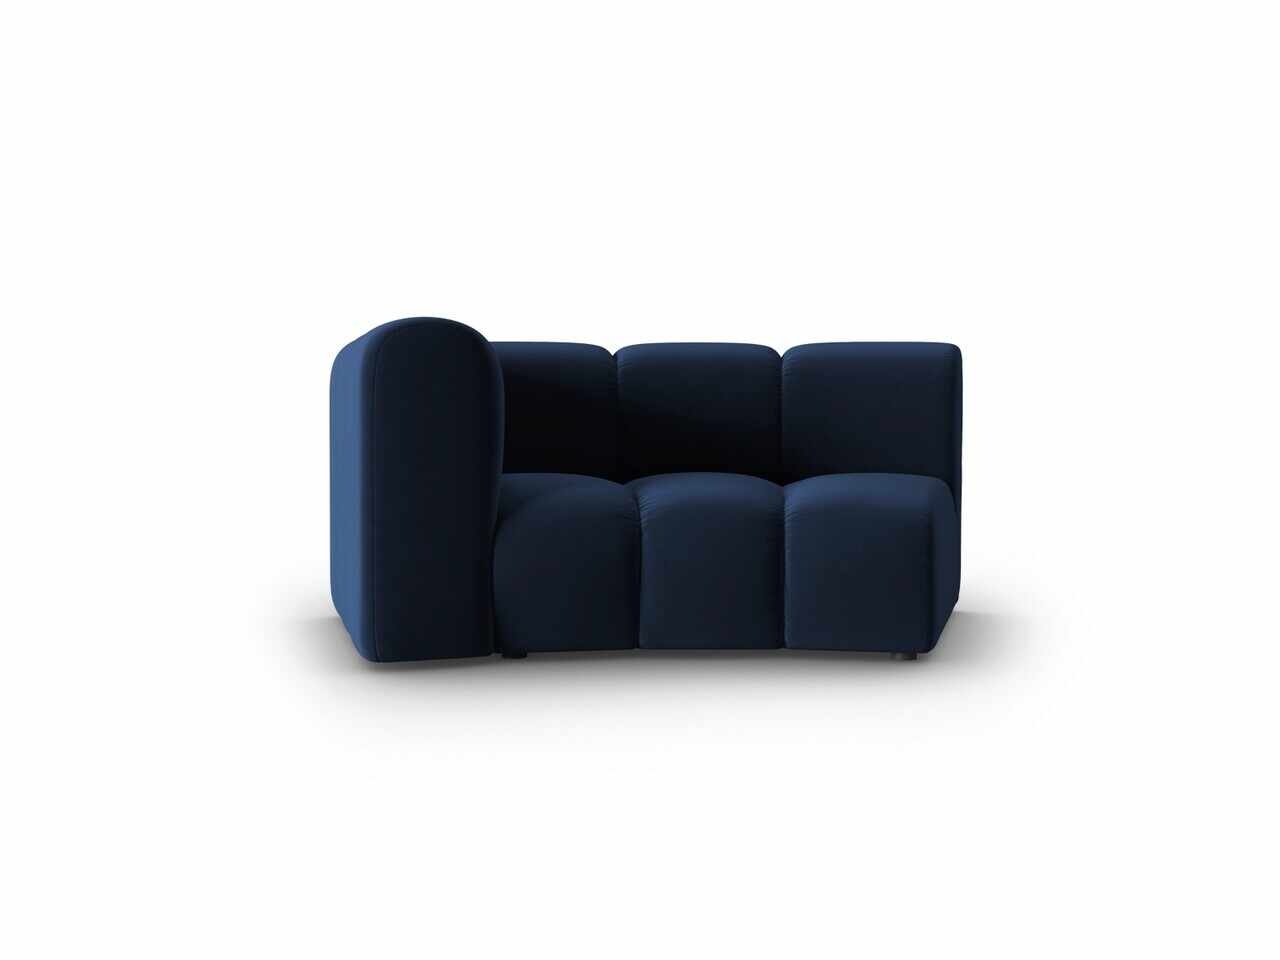 Modul canapea stanga 1.5 locuri, Lupine, Micadoni Home, BL, 171x87x70 cm, catifea, albastru regal